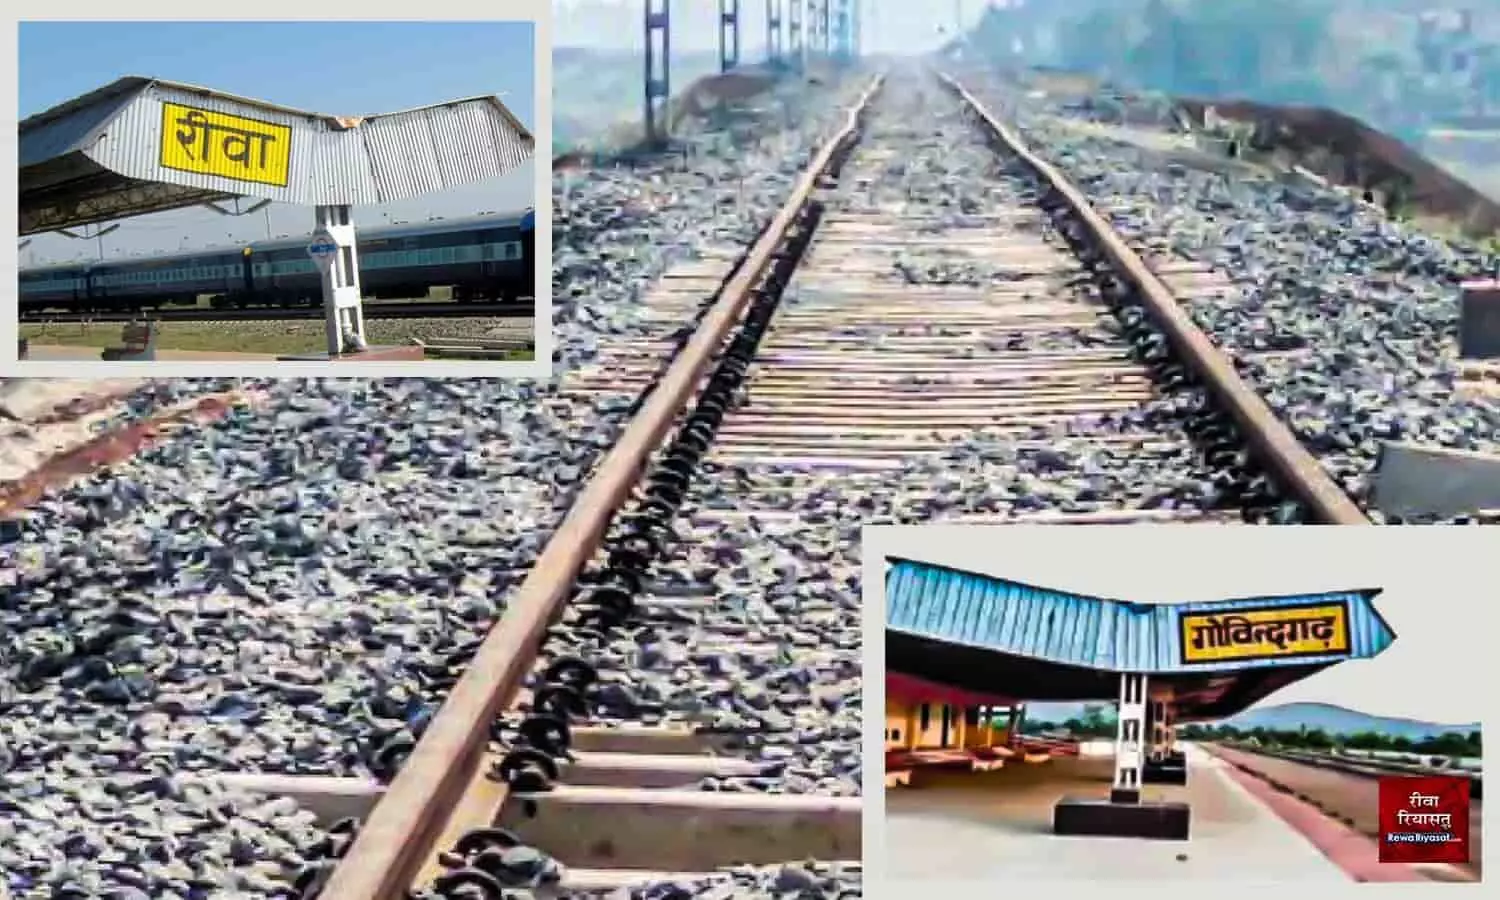 फरवरी में ट्रेन के परिचालन में असमंजस की स्थिति: 16 दिनों से बंद है रीवा गोविन्दगढ़ रेल लाइन का काम, जानें वहज